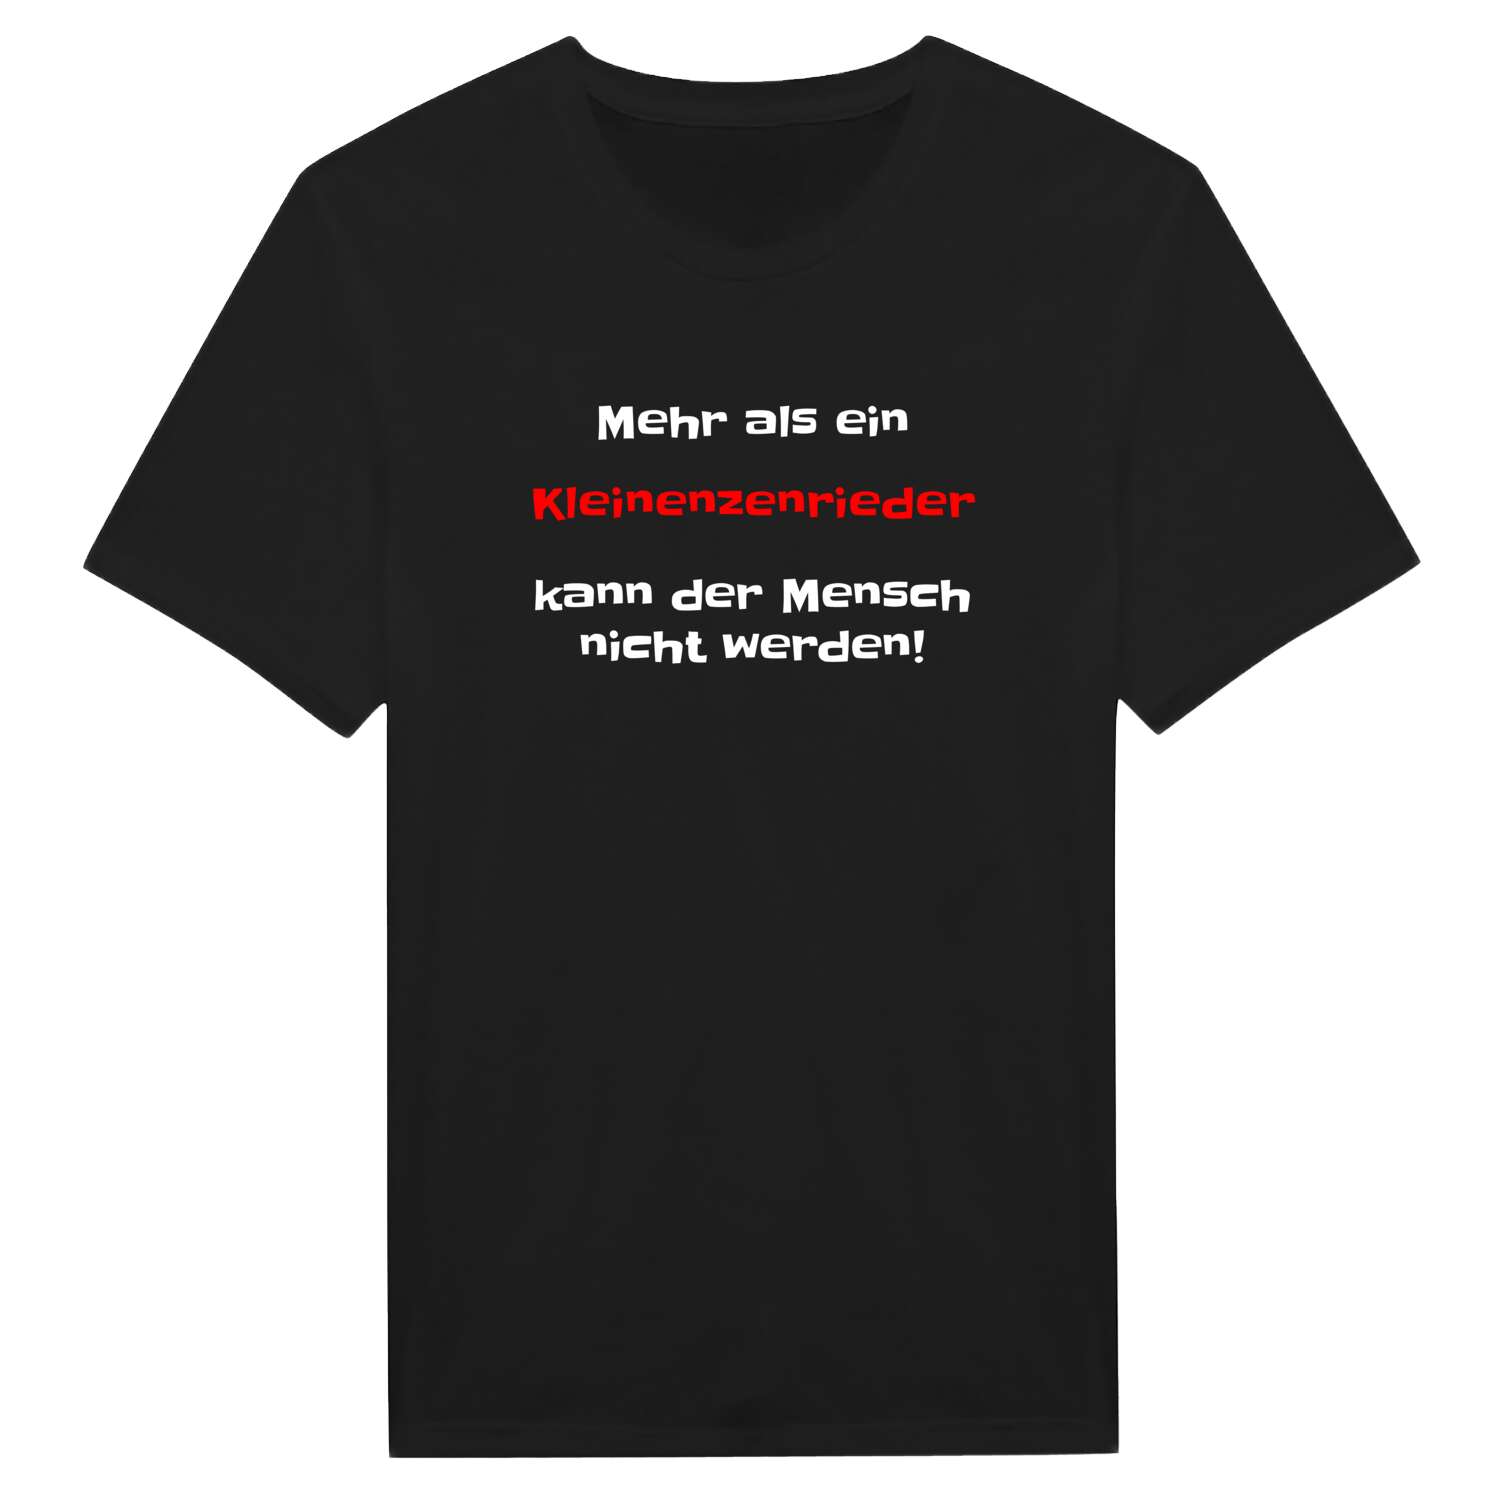 Kleinenzenried T-Shirt »Mehr als ein«